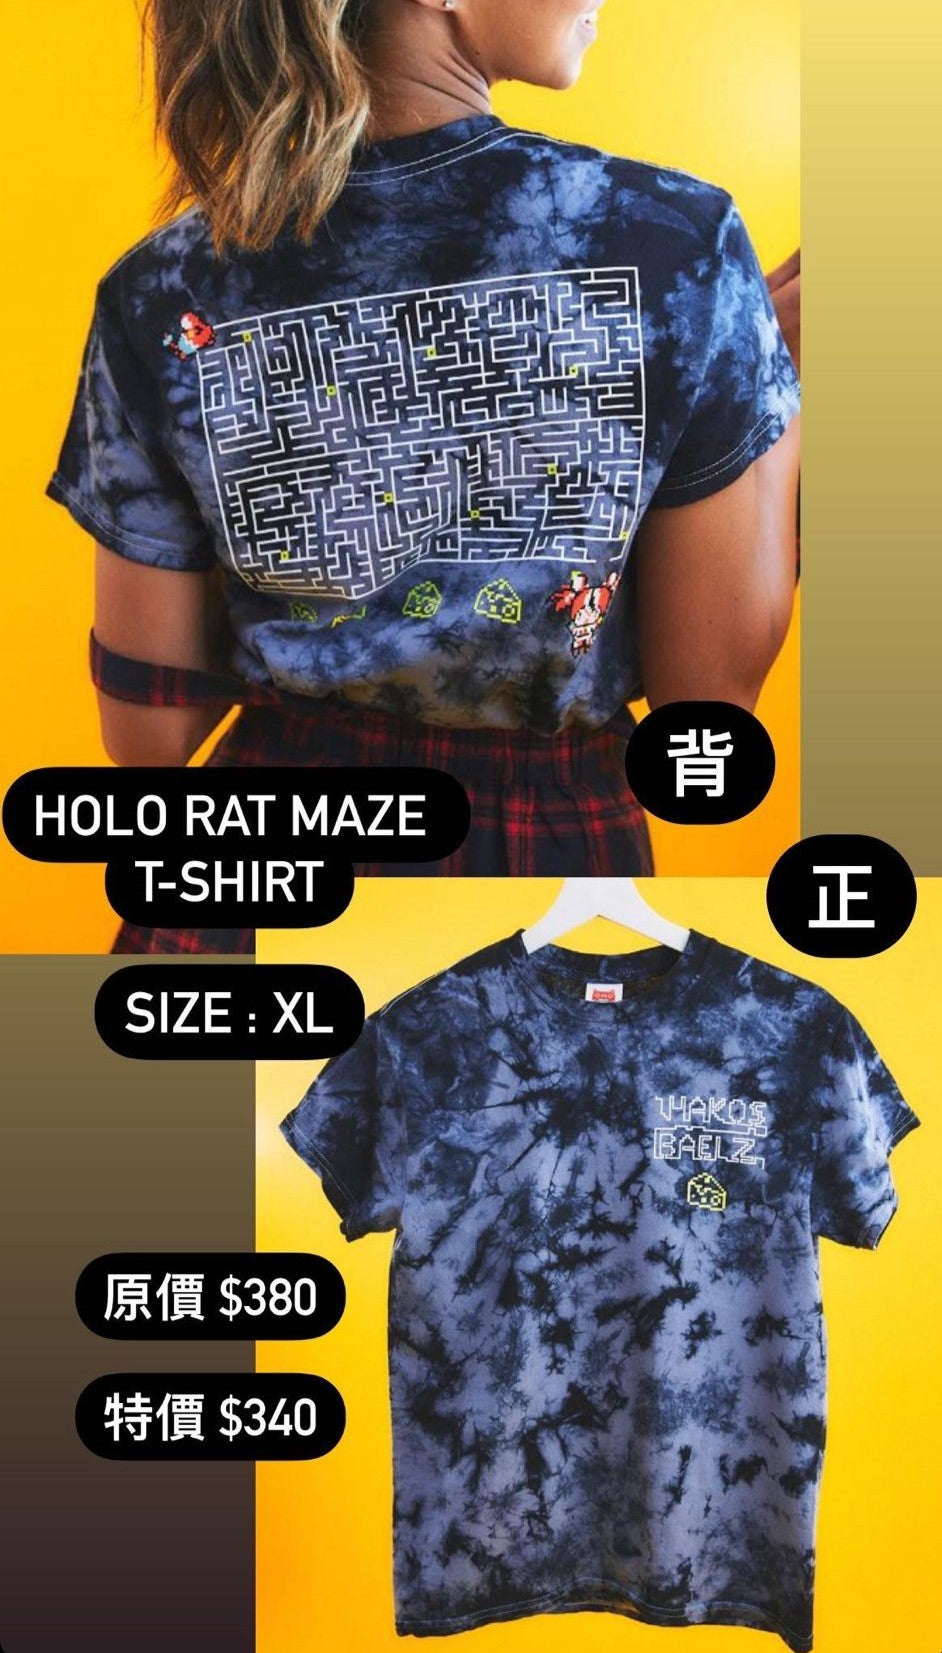 「現貨」Hololive EX x Omocat 衣服周邊 - Holo Rat Maze T-shirt